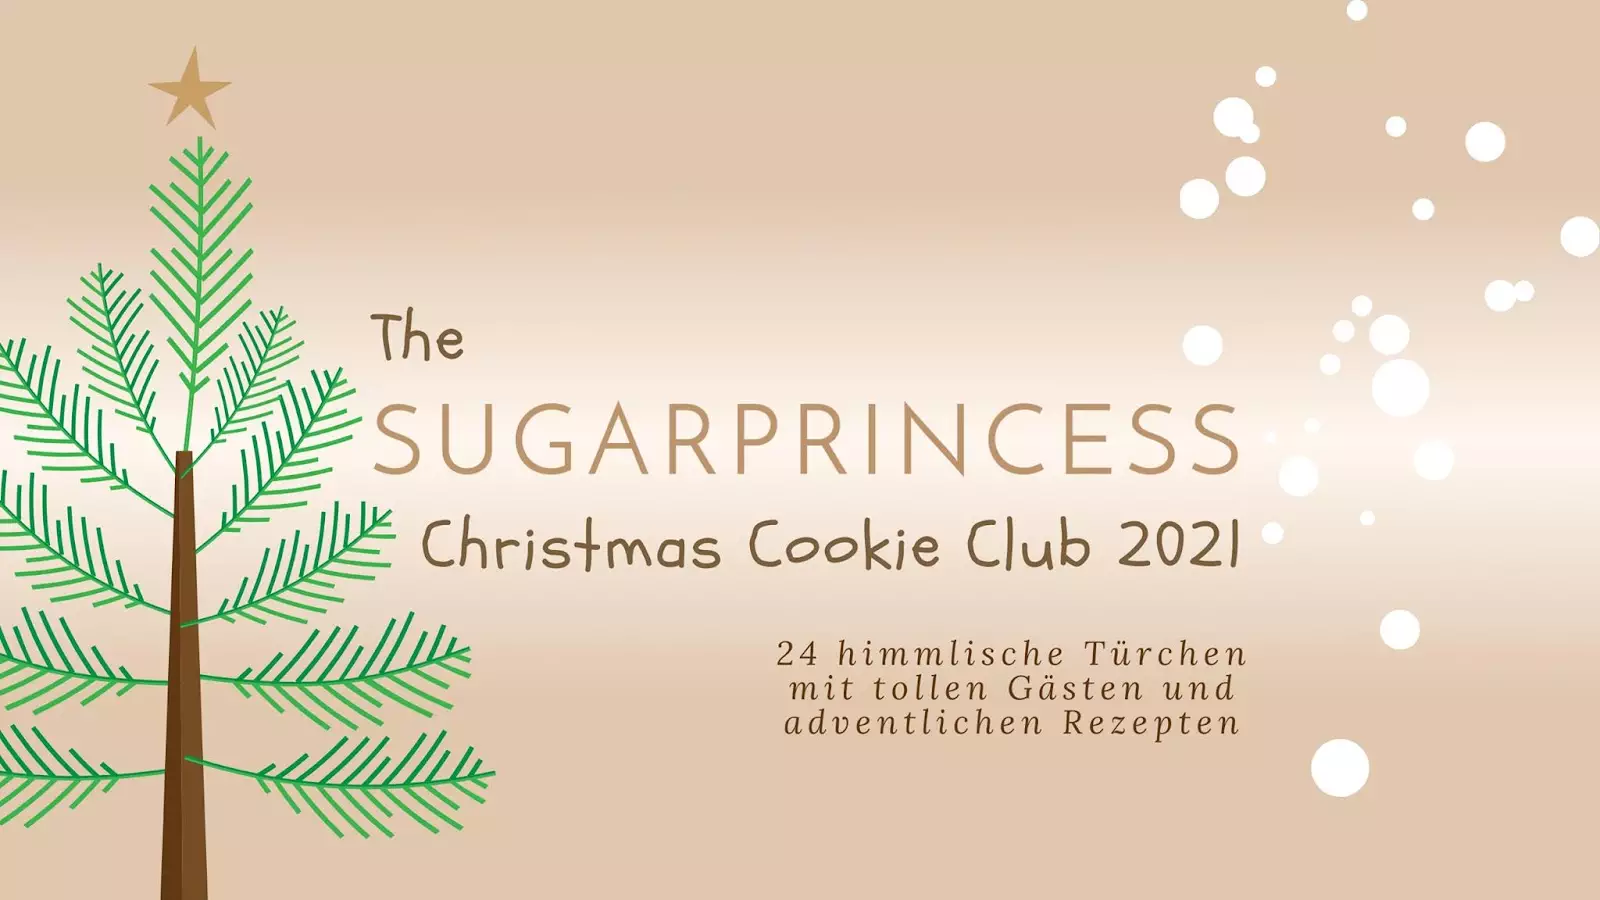 The Sugarprincess Christmas Cookie Club 2021